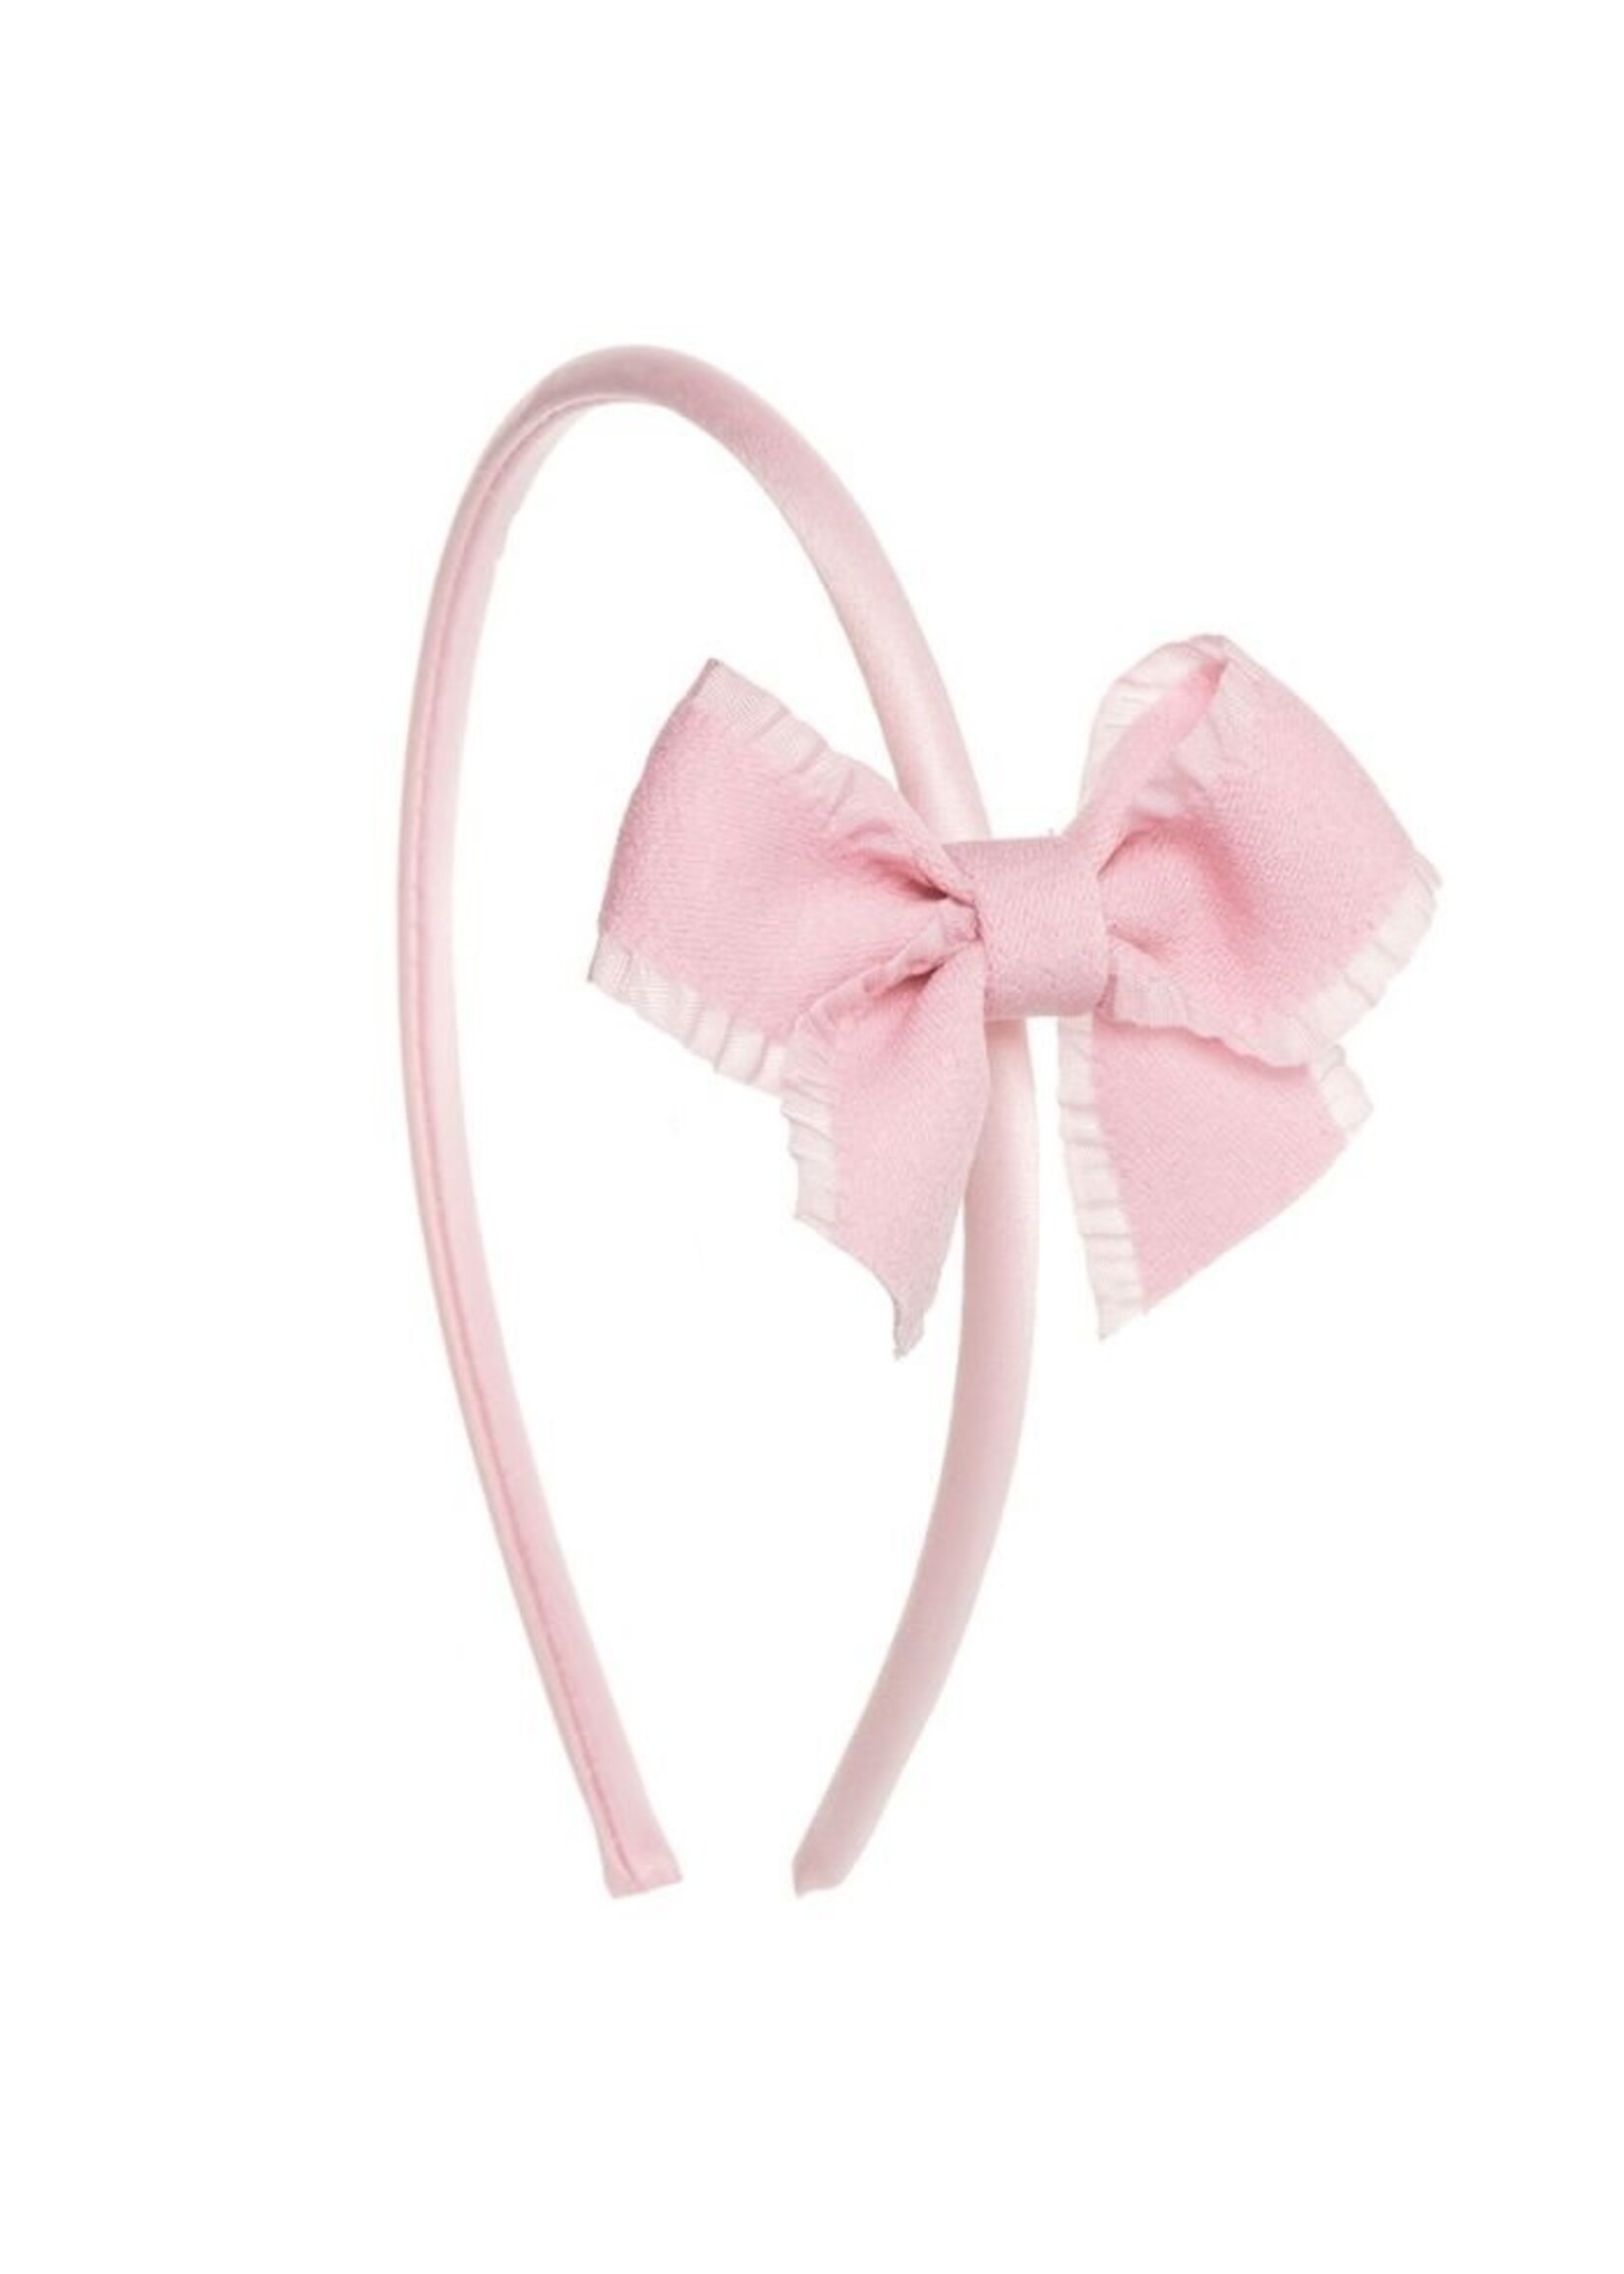 Diadeem Little Bow - Light Pink